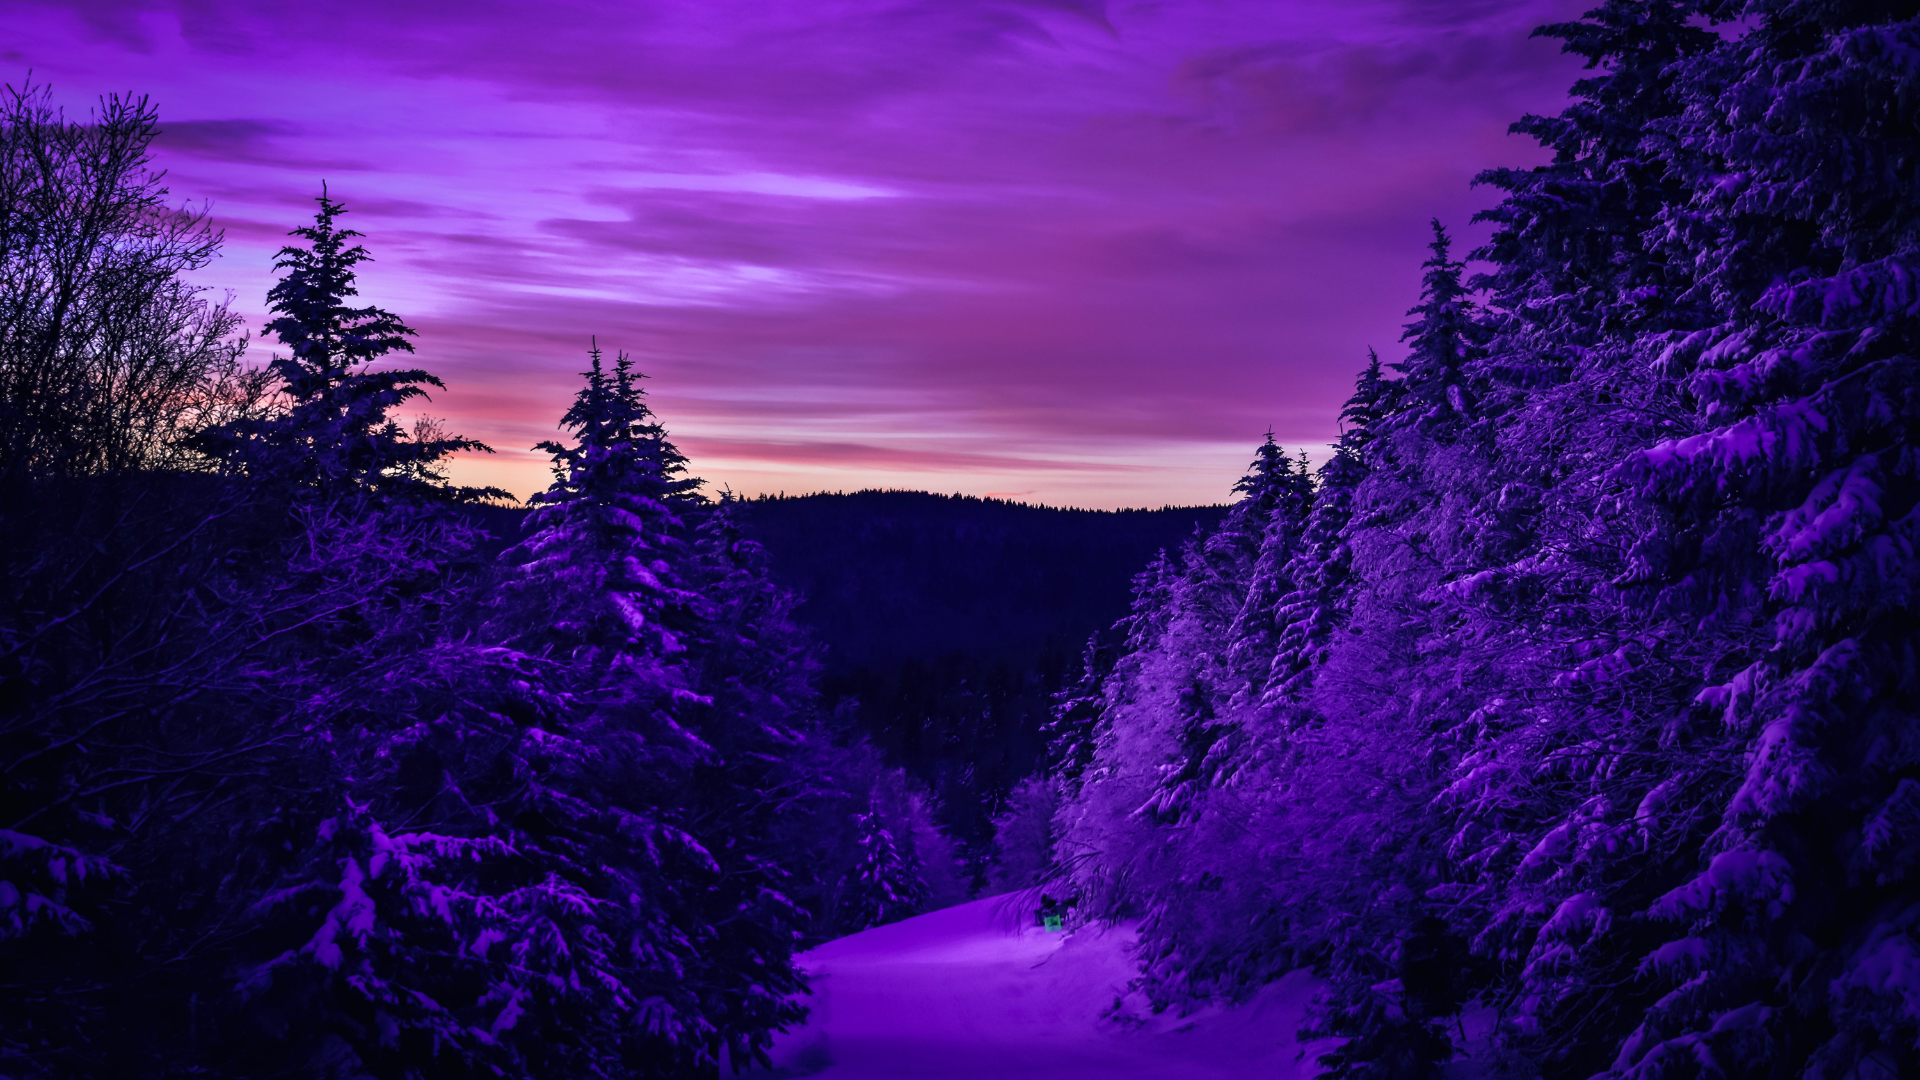 Cute purple aesthetic wallpaper desktop free